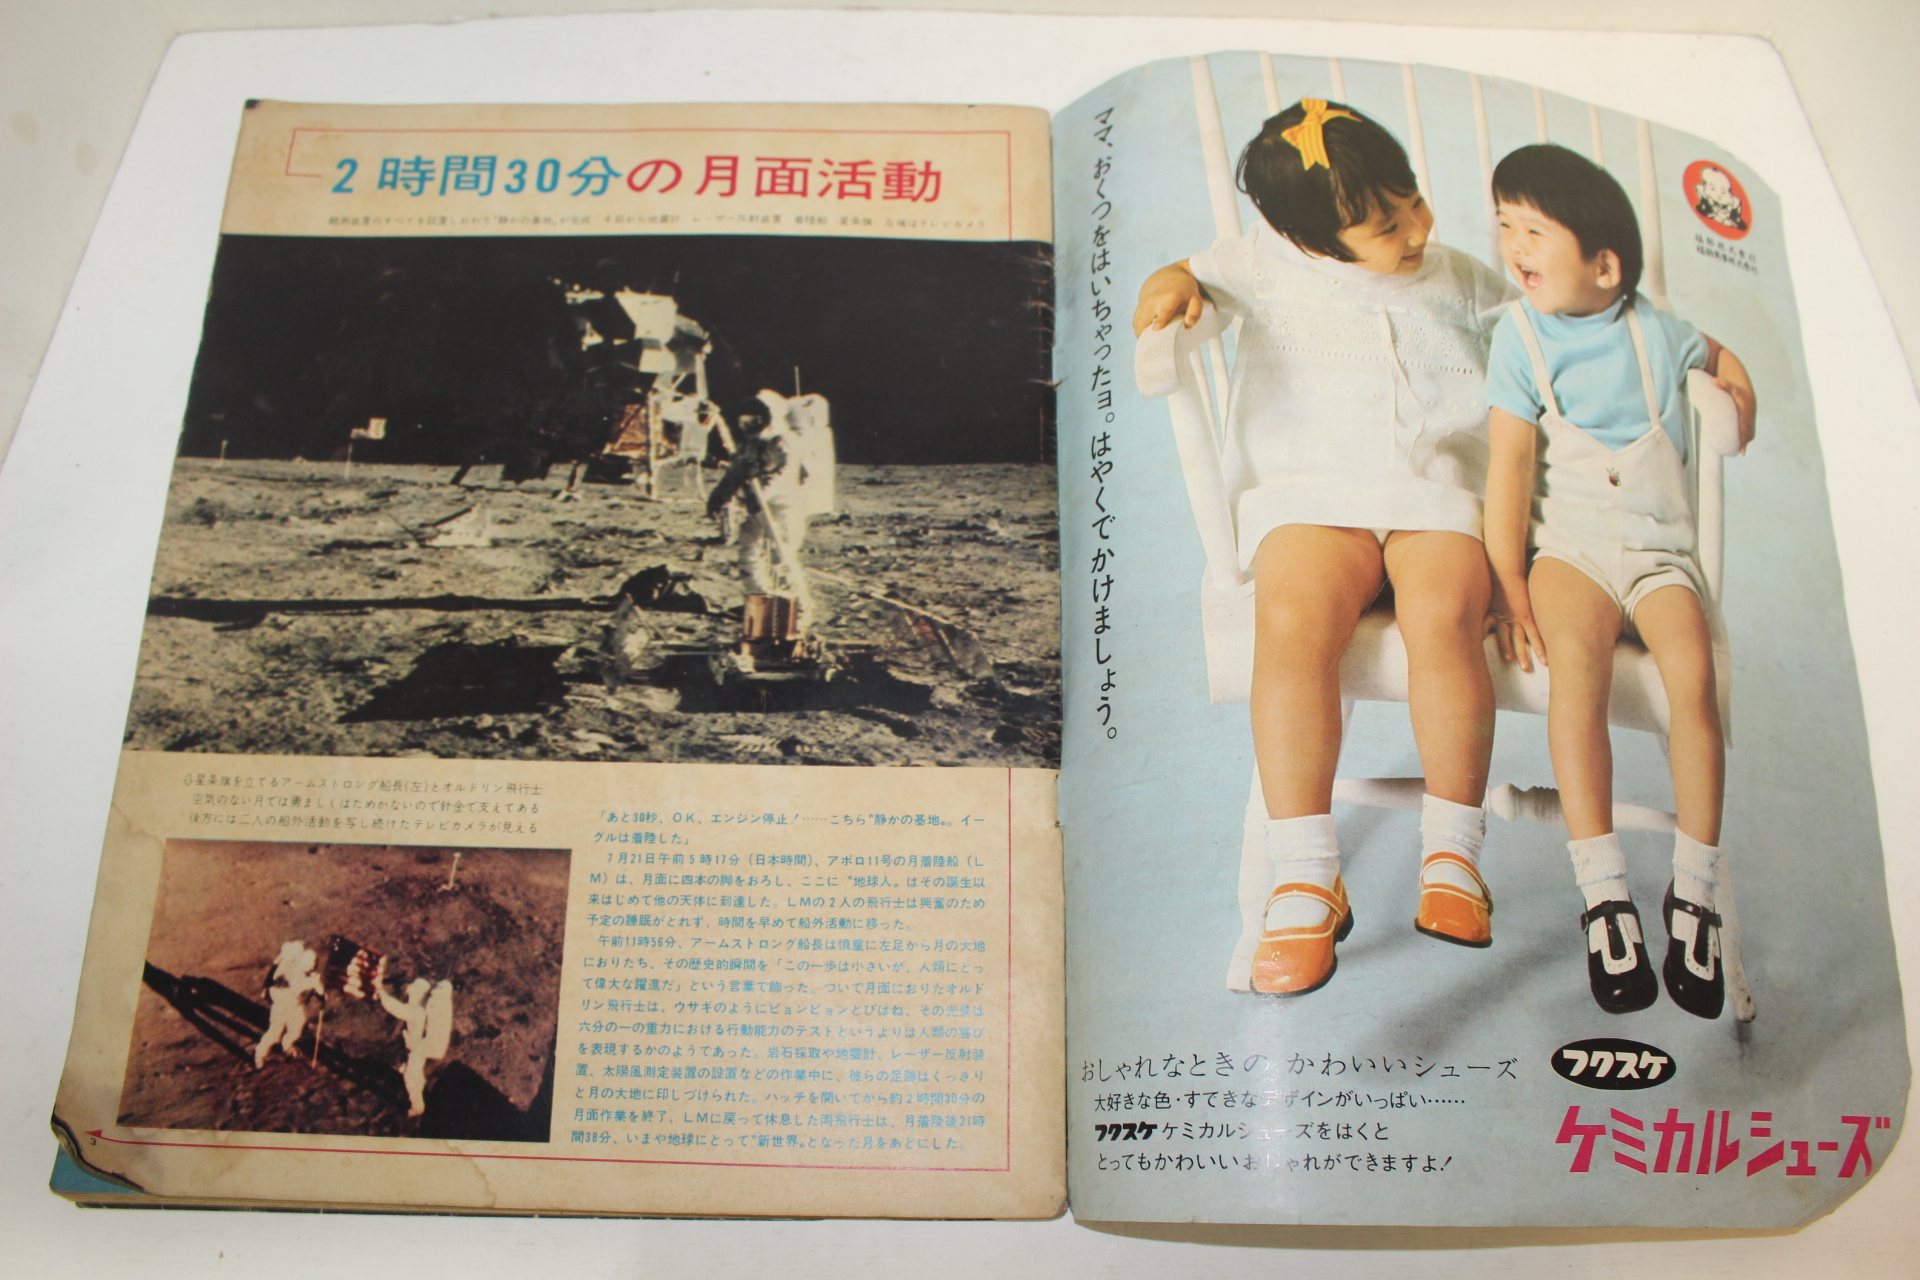 1969년(소화44년) 일본간행 인류최초 달착륙 잡지